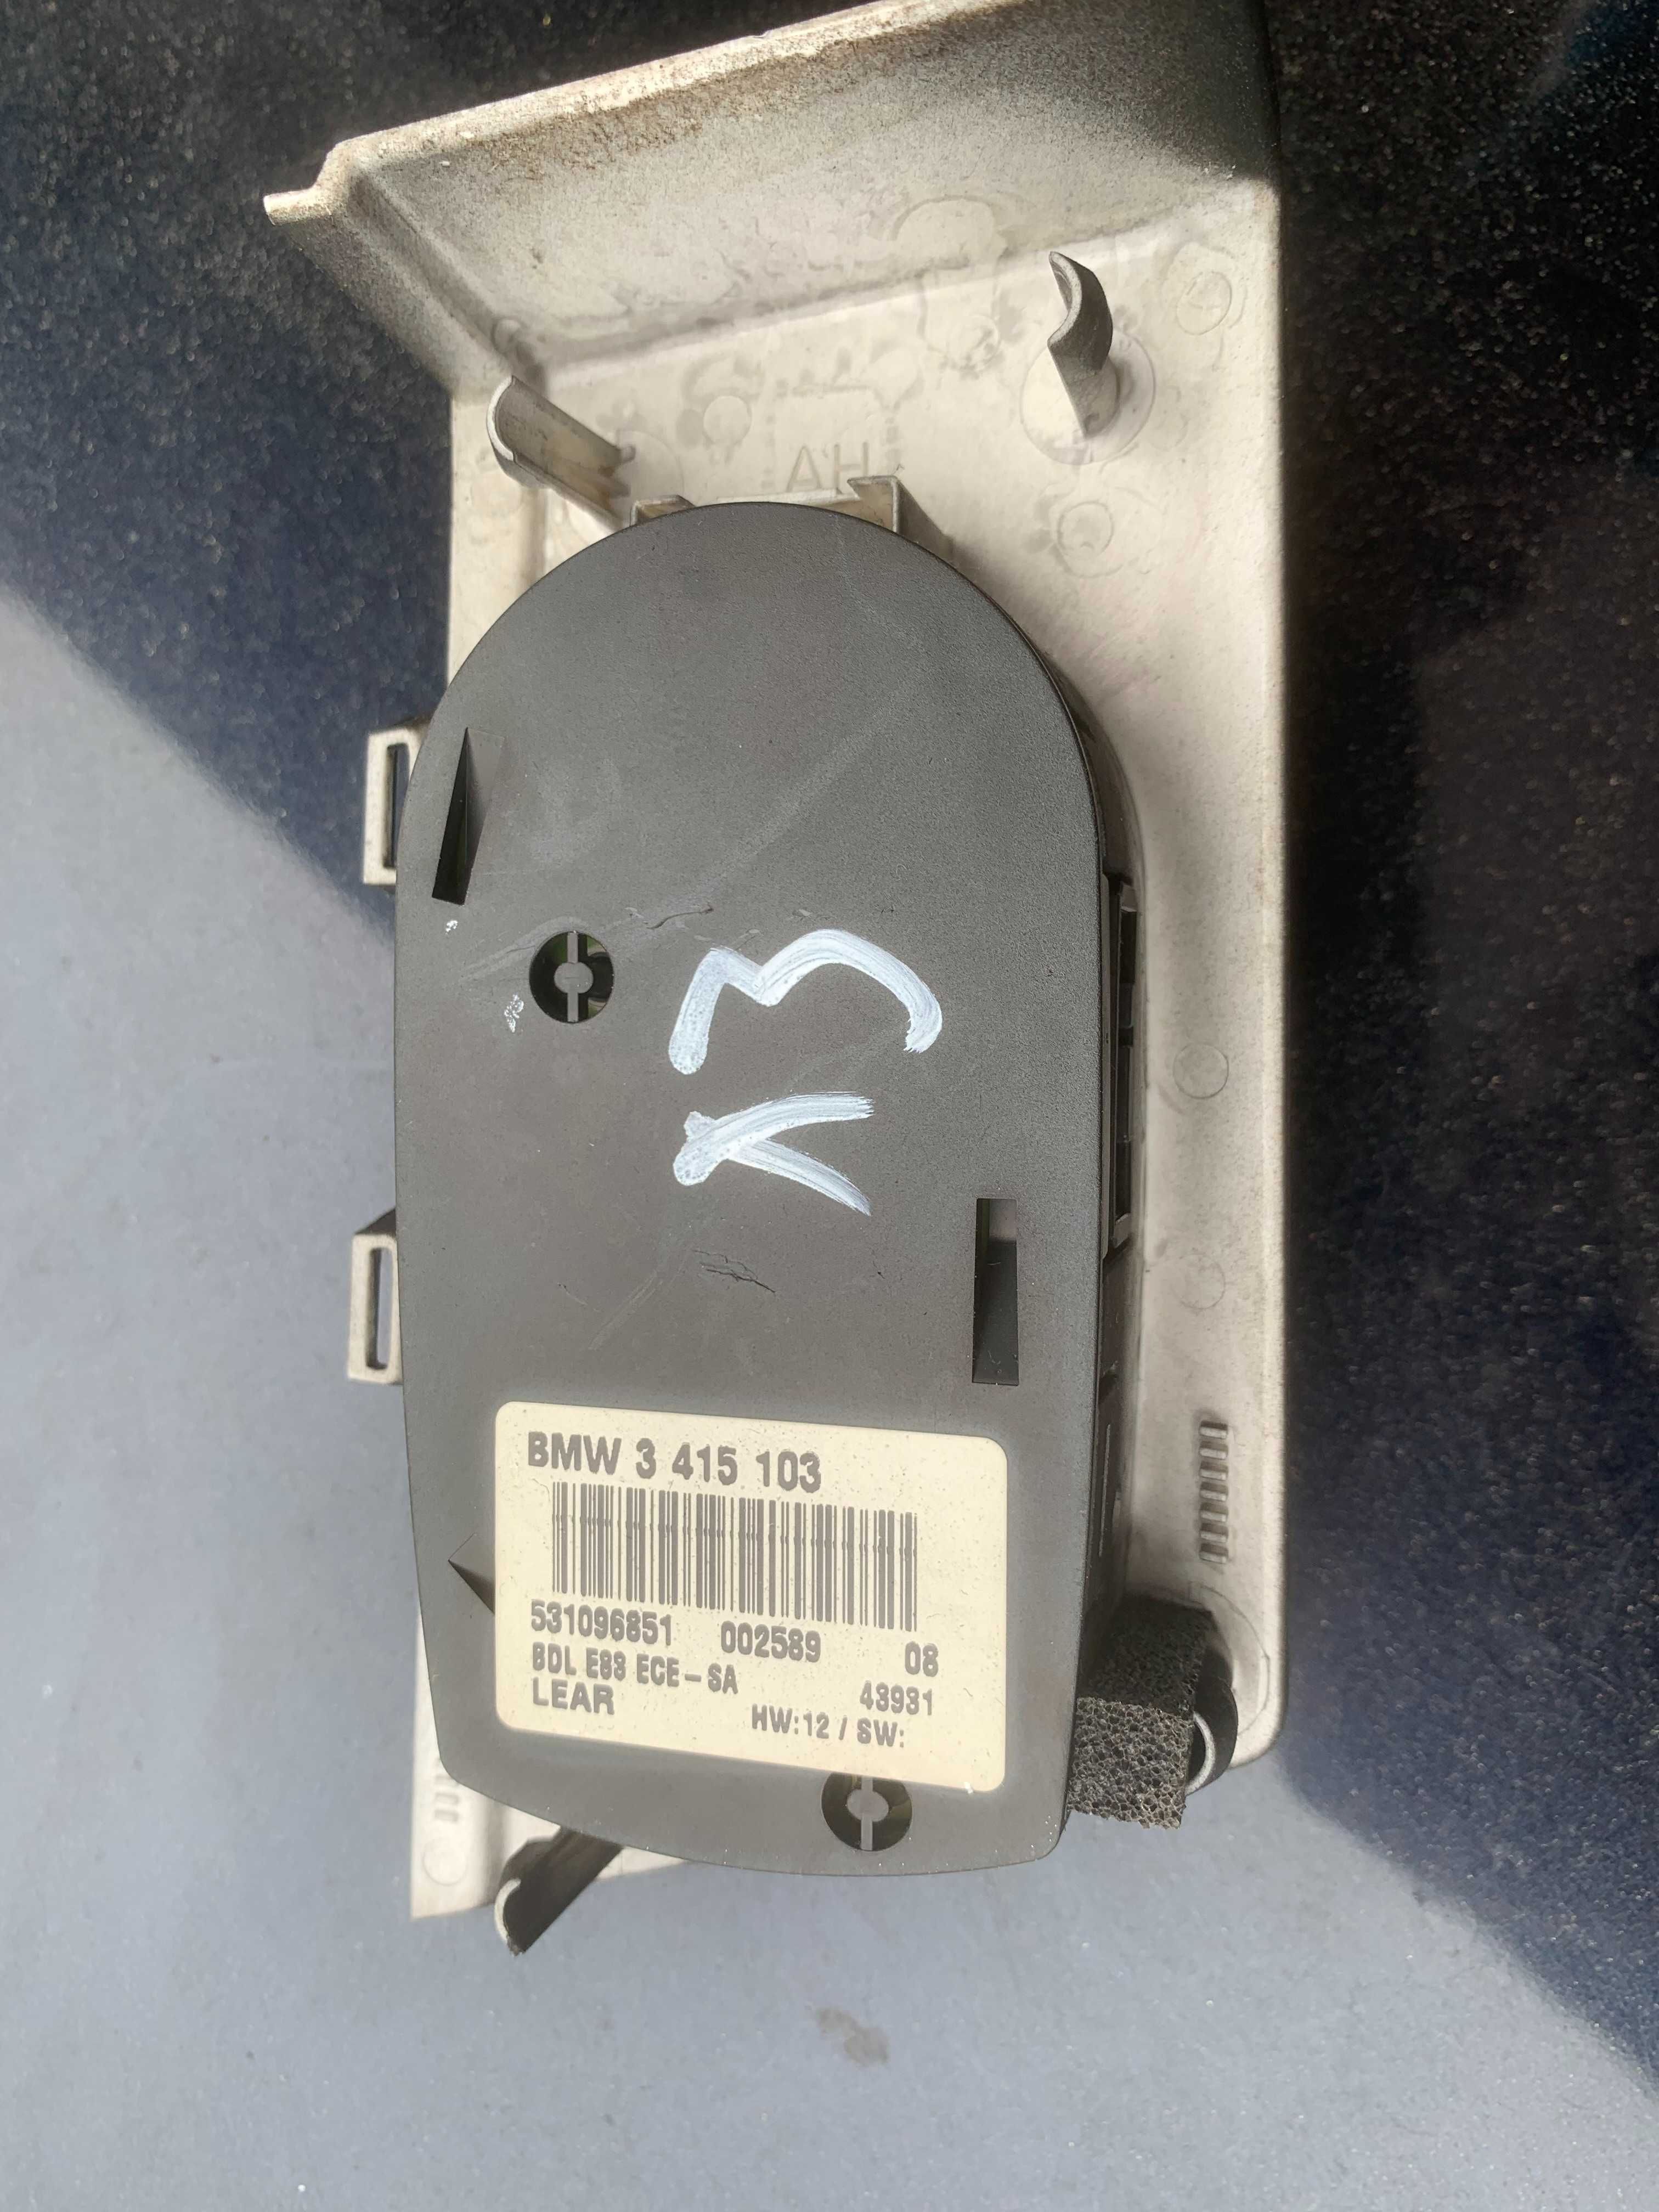 Bmw x3 e83 przełącznik włącznik świateł 3.415.103 Europa